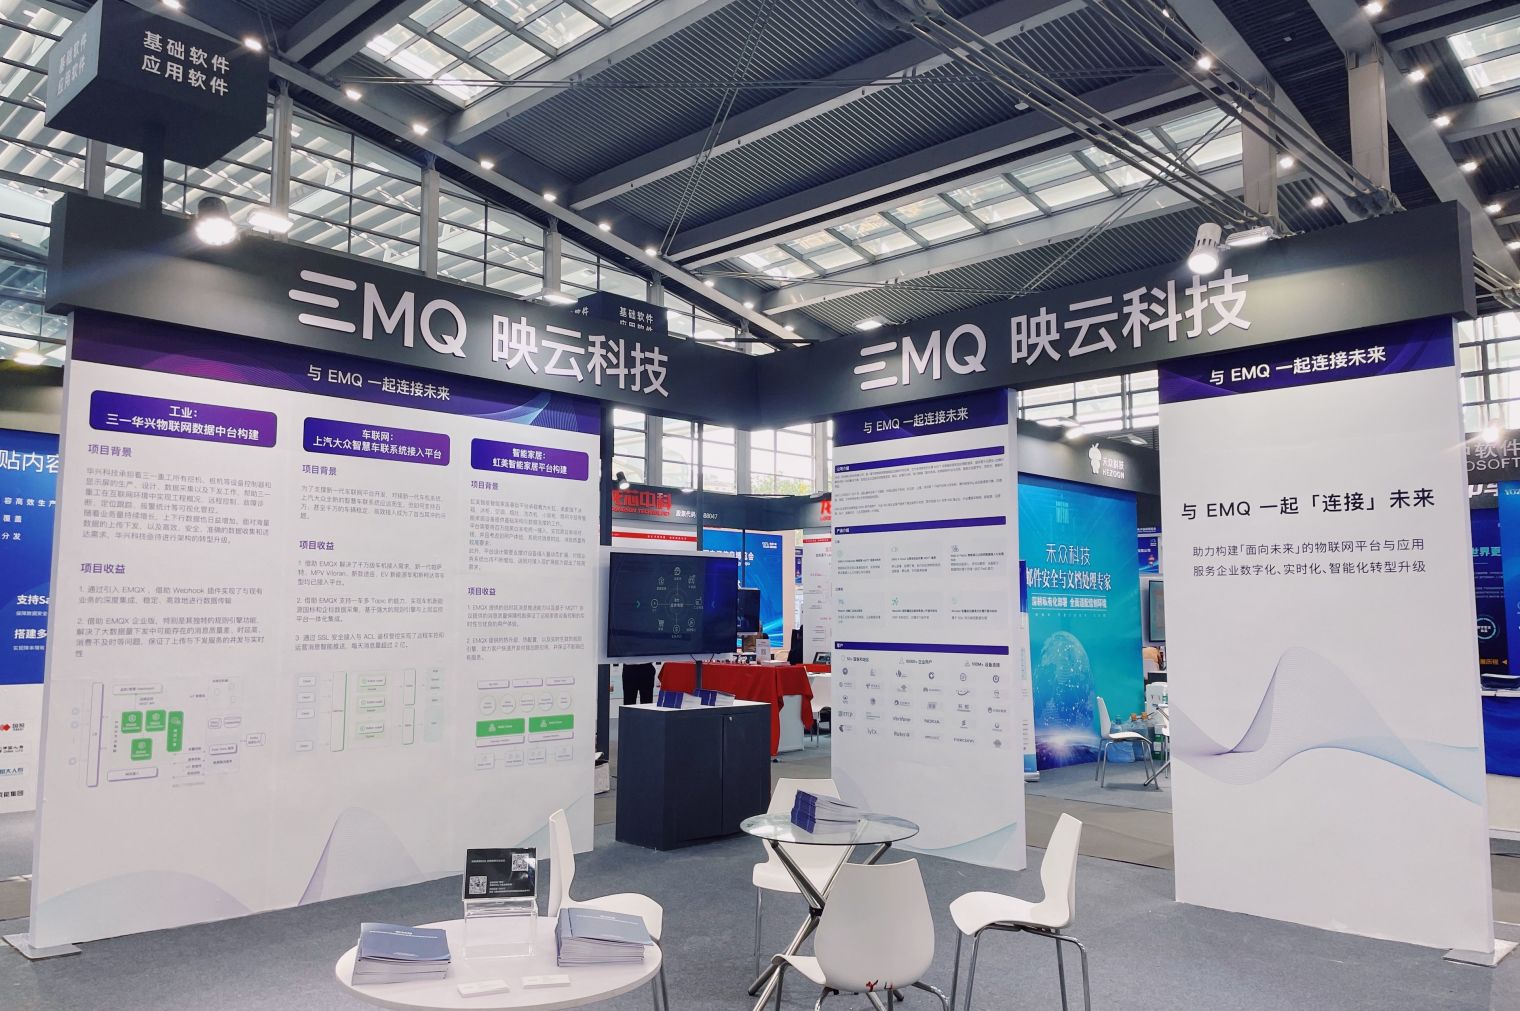 EMQ 亮相第十届中国电子信息博览会